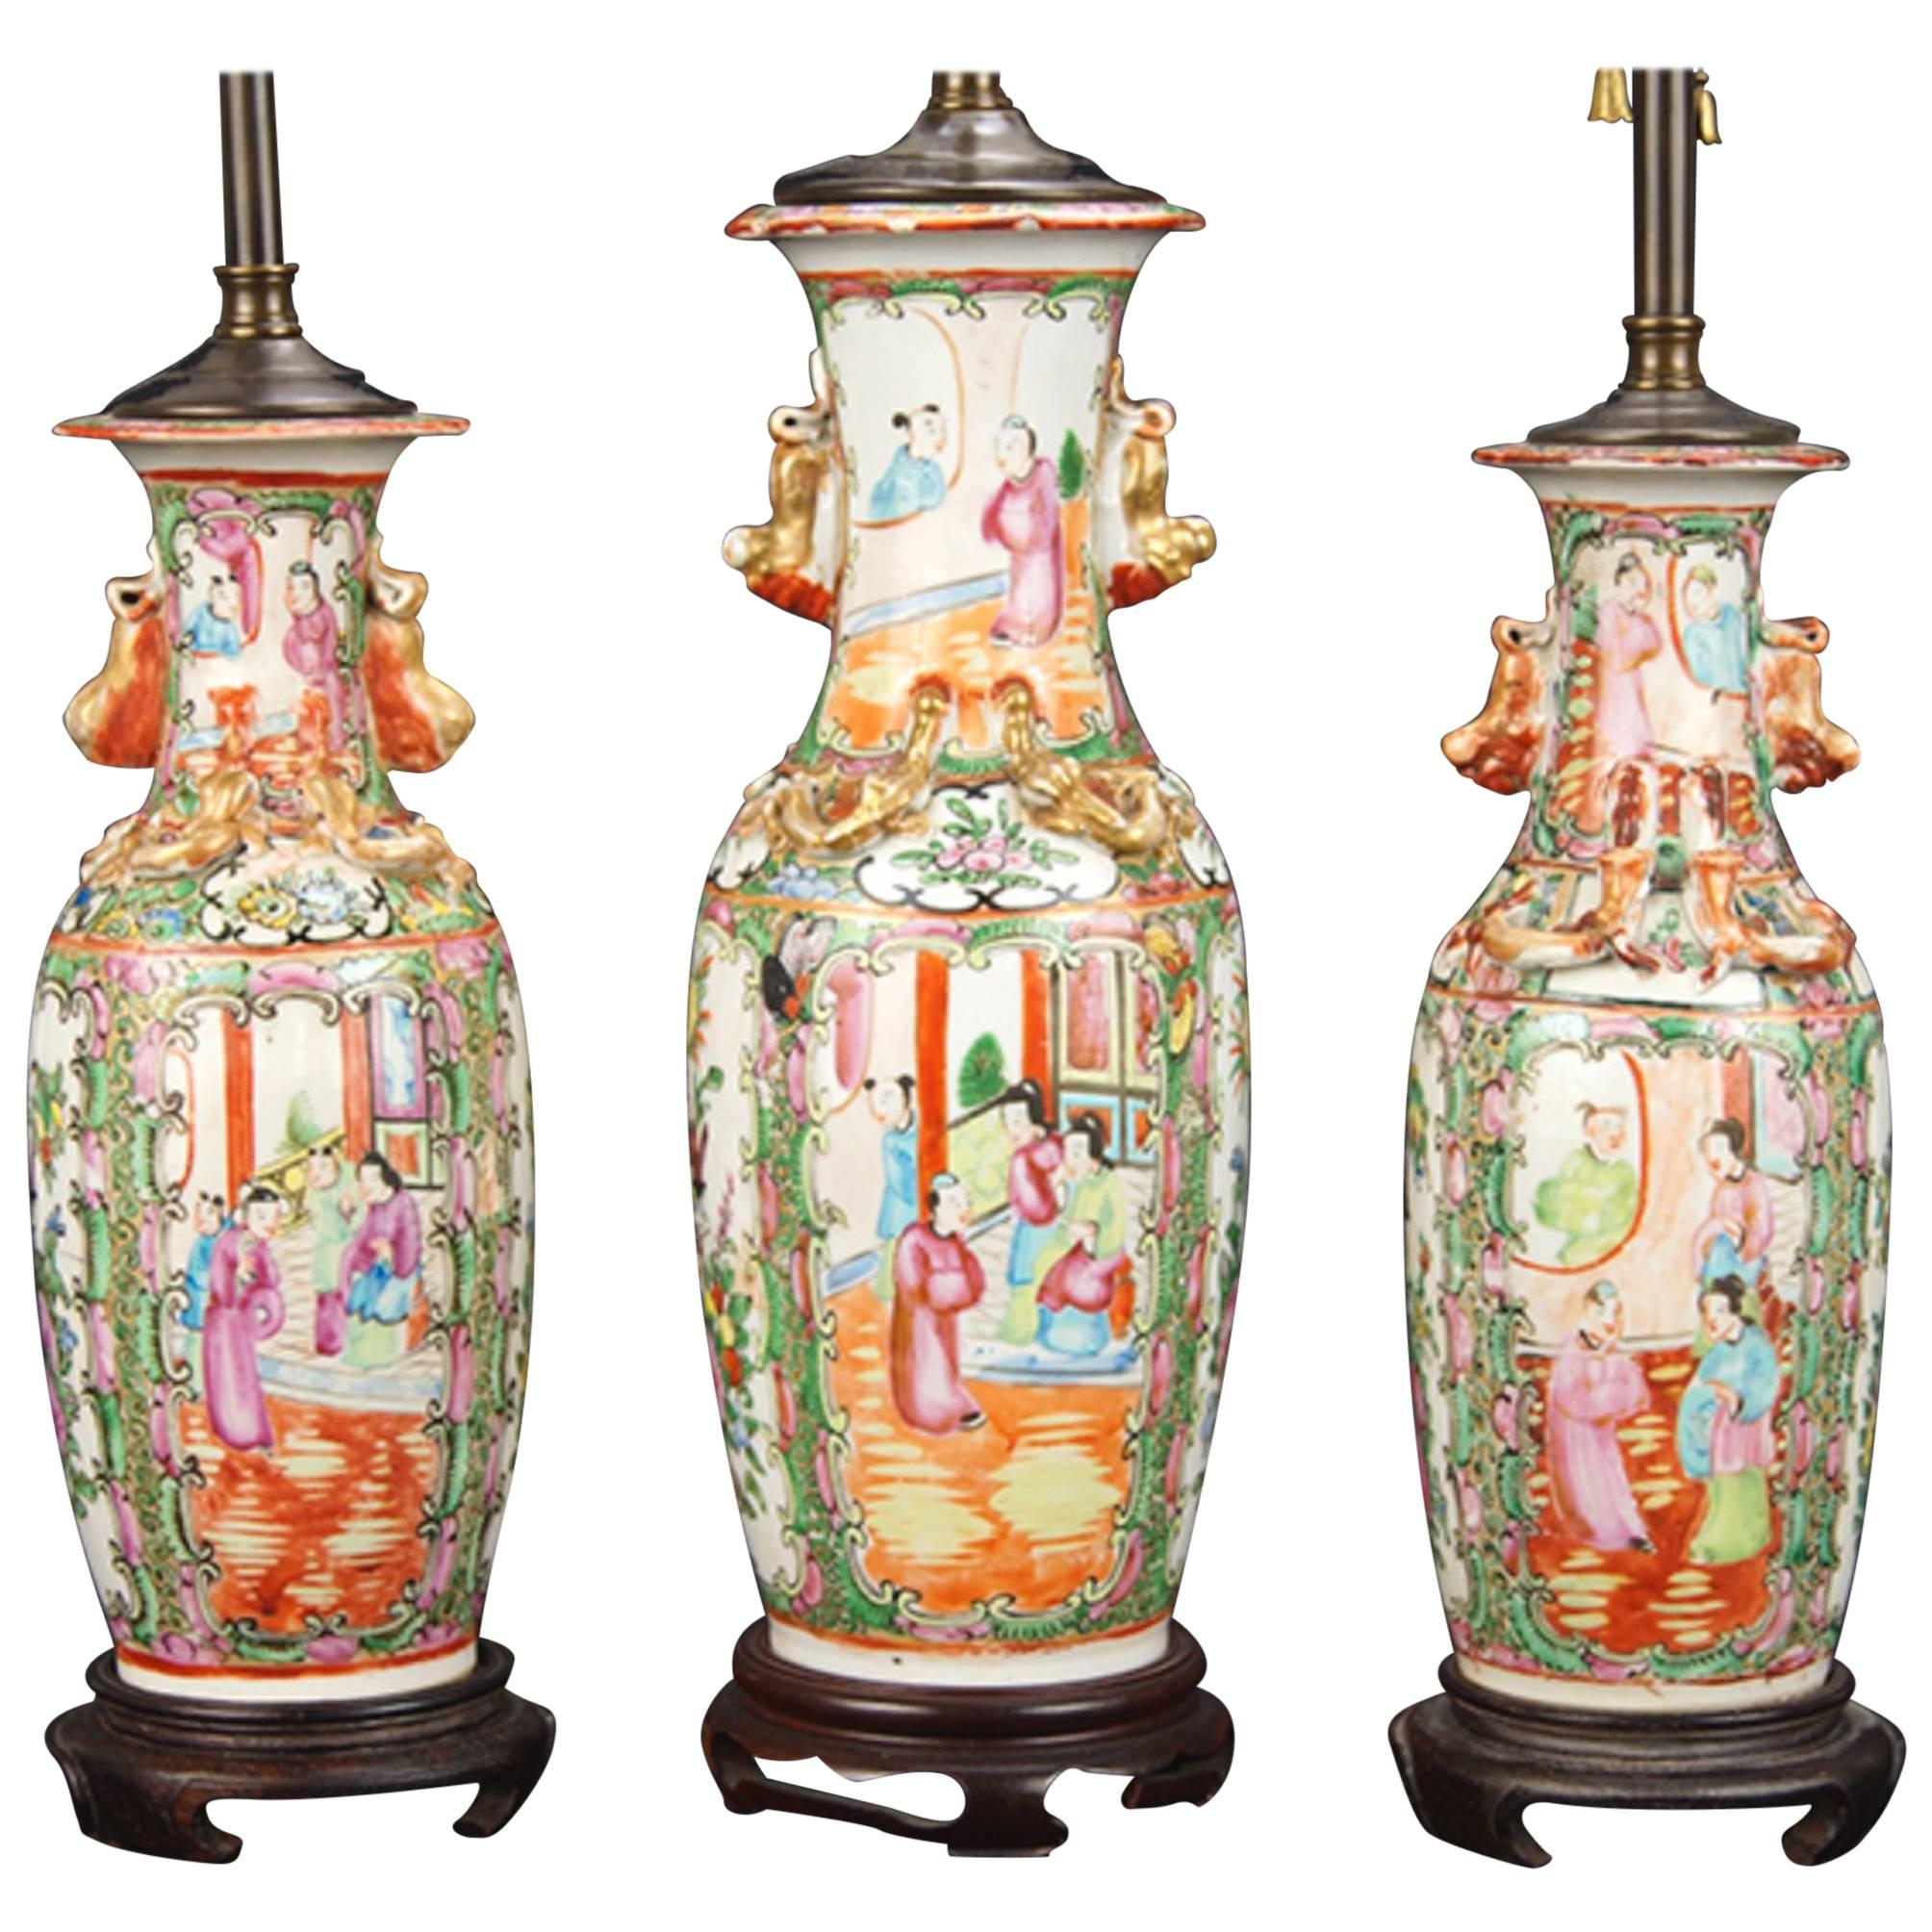 Drei Vasen aus dem 19. Jahrhundert, die als Lampen montiert sind.  Wir werden das Paar unterteilen.